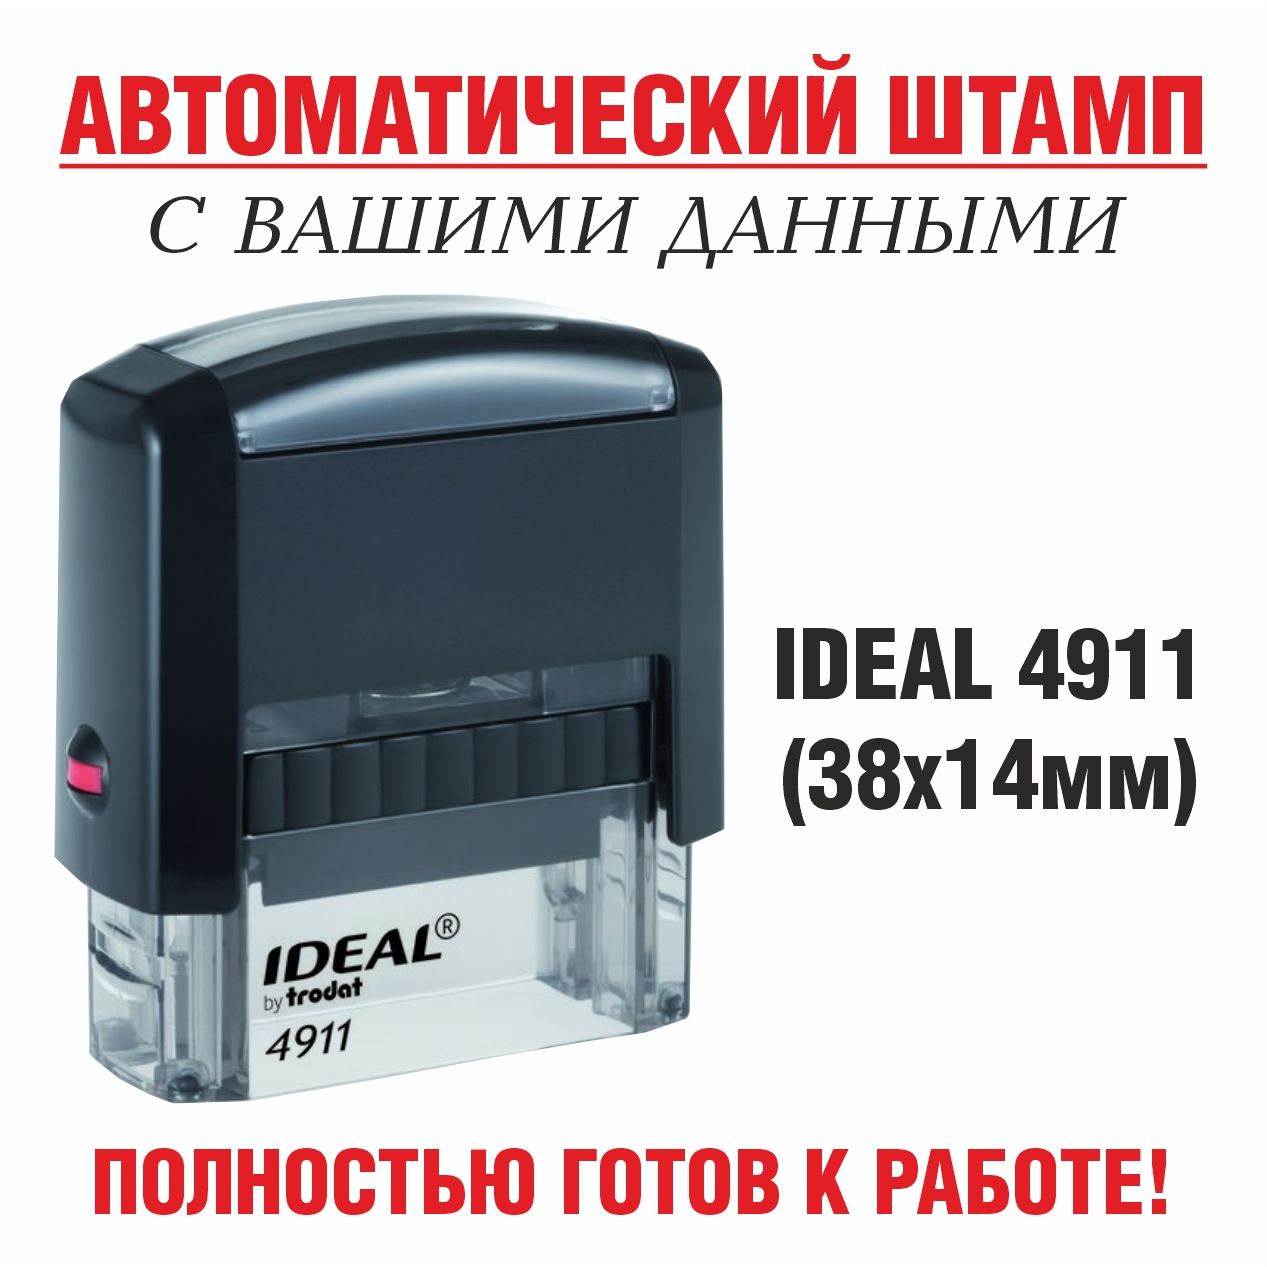 Штампавтоматическийсвашимиданными,Ideal4911,14х38мм.